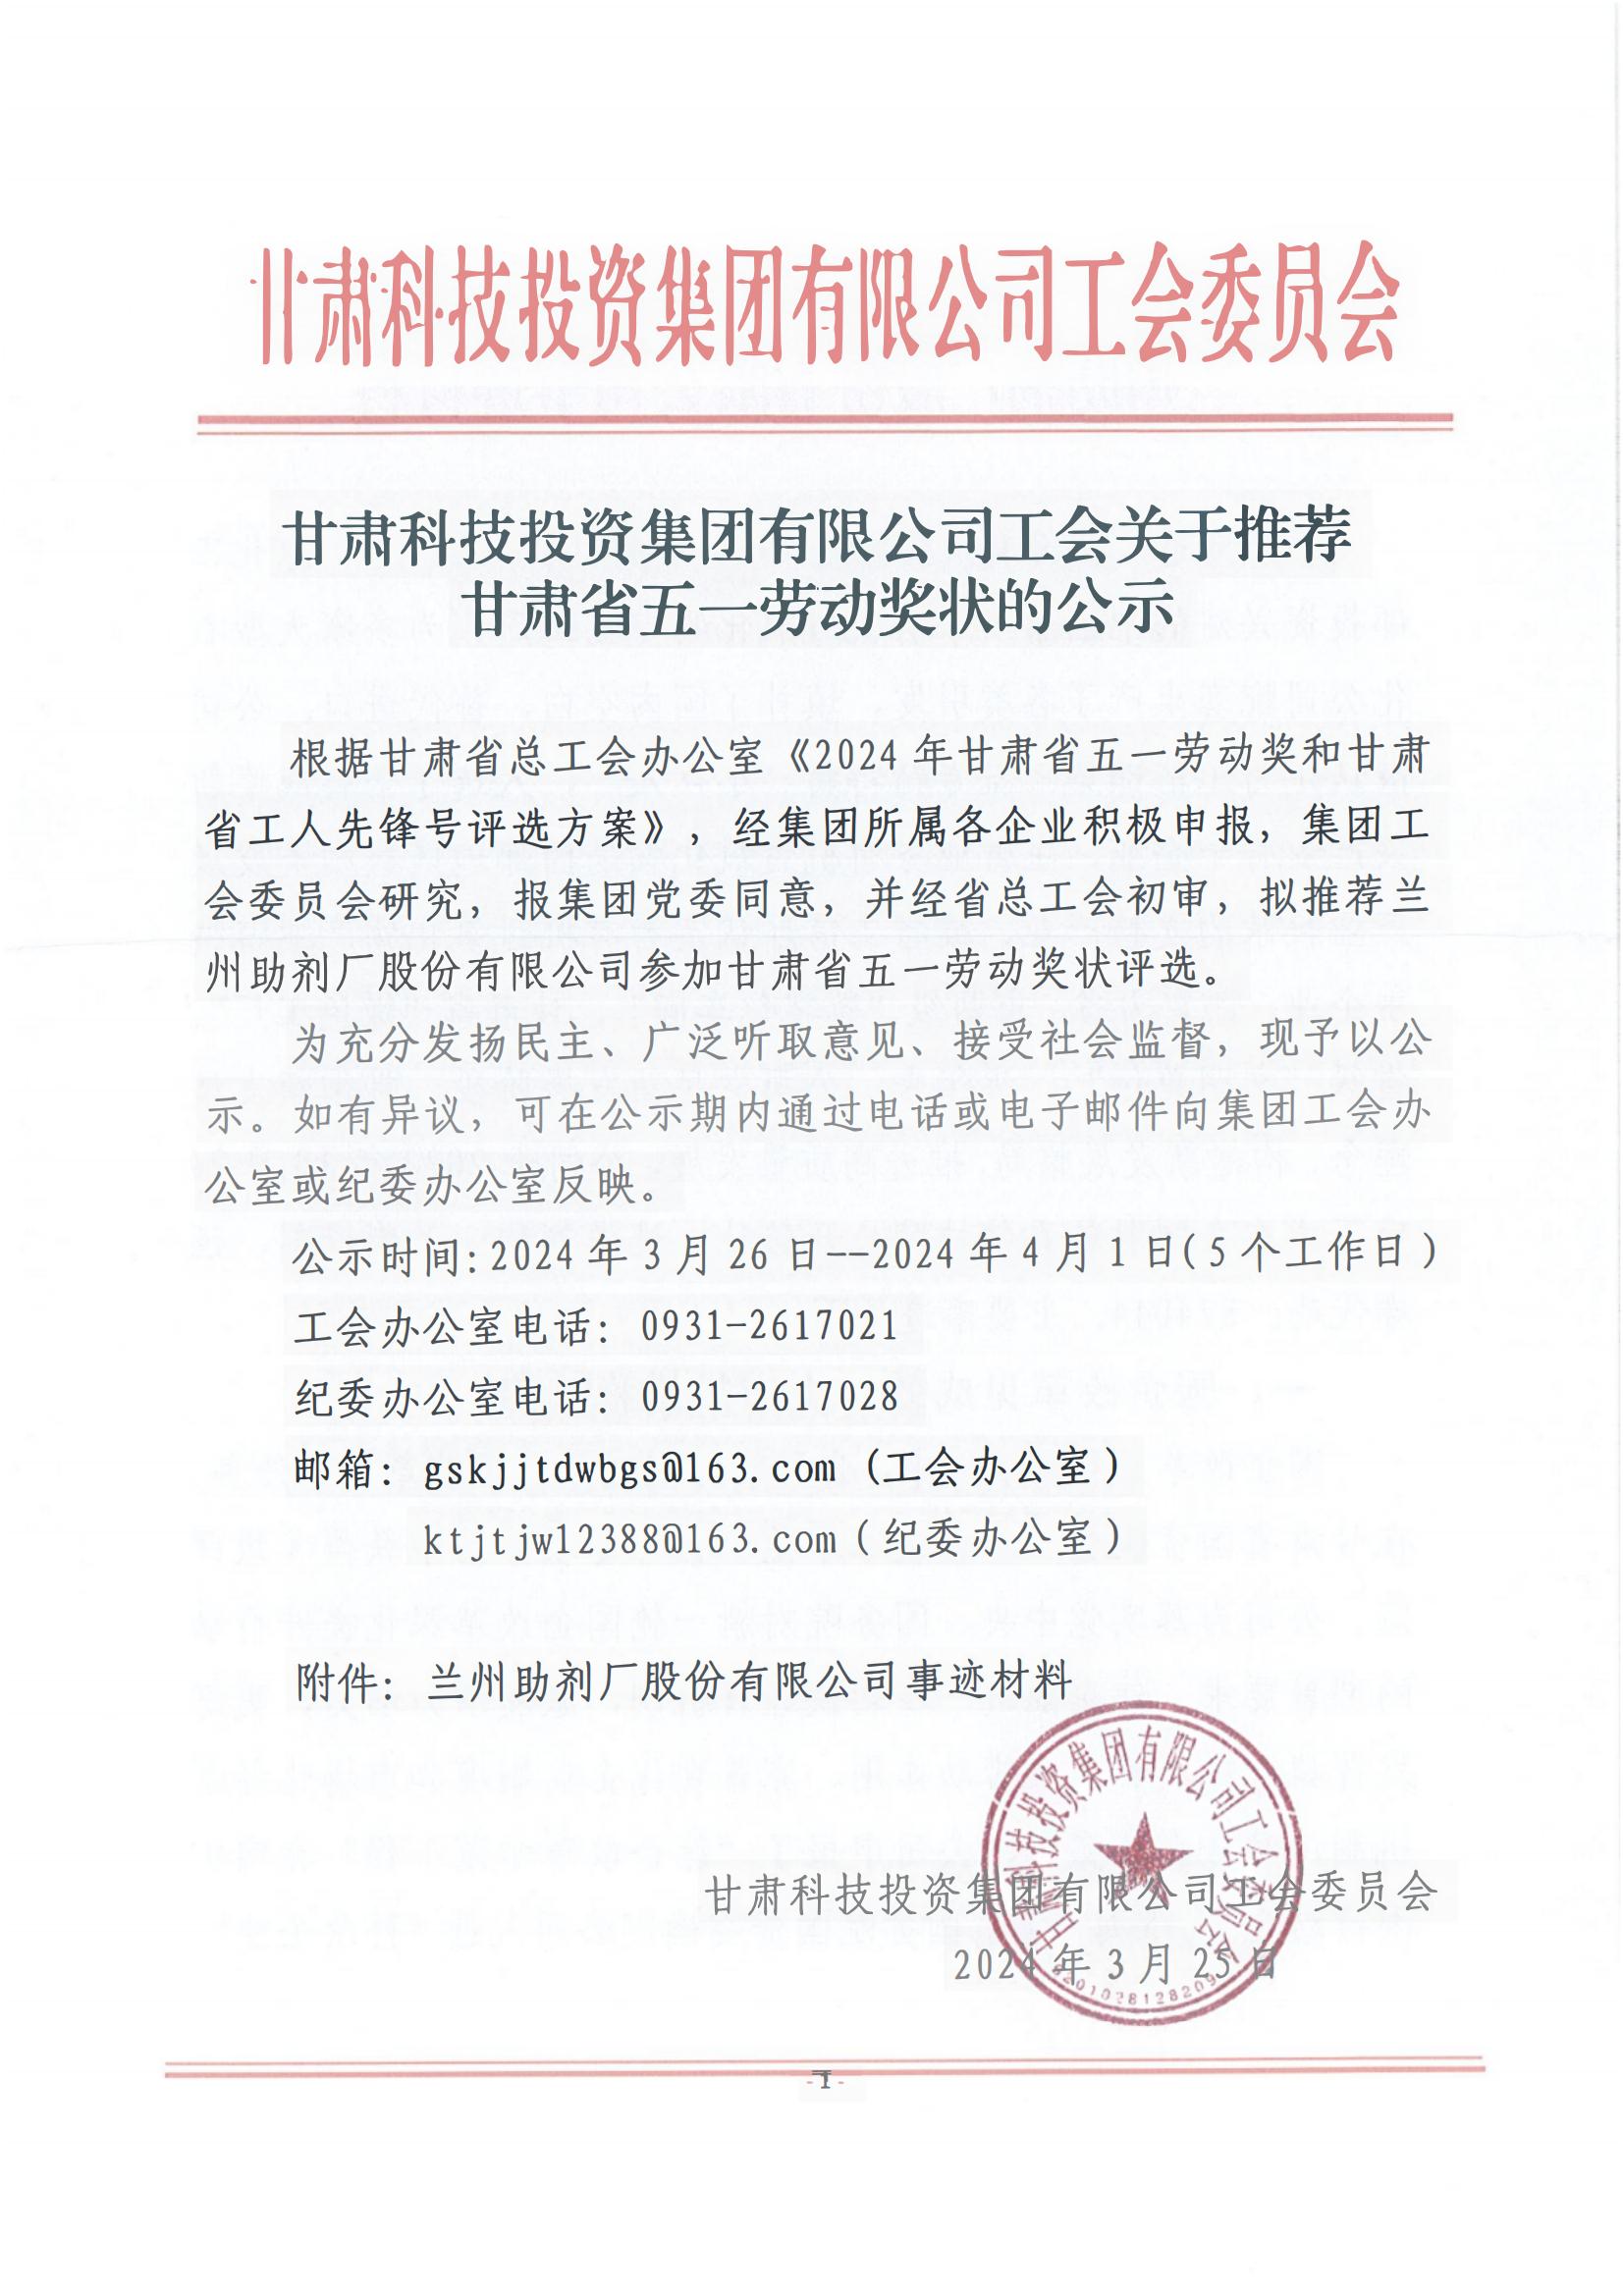 皇冠游戏在线平台工会关于推荐甘肃省五一劳动奖状的公示_00.jpg